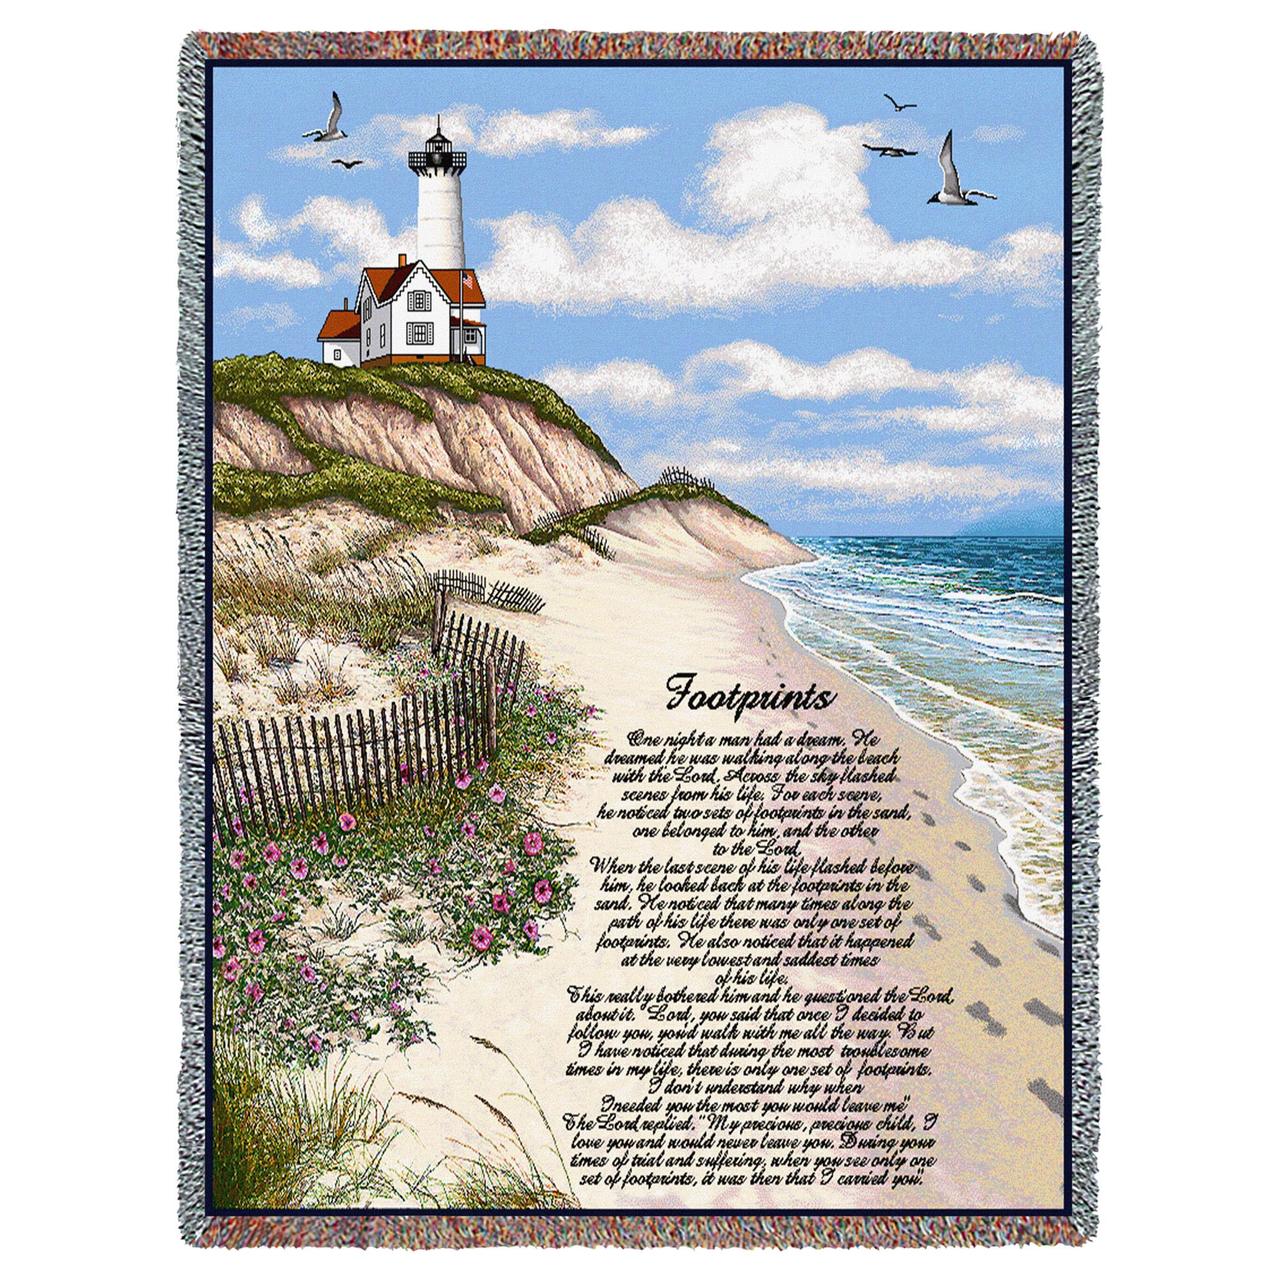 Cobertor de tapeçaria inspiradora de pegadas de Jesus na areia com franjas de algodão EUA 72x54